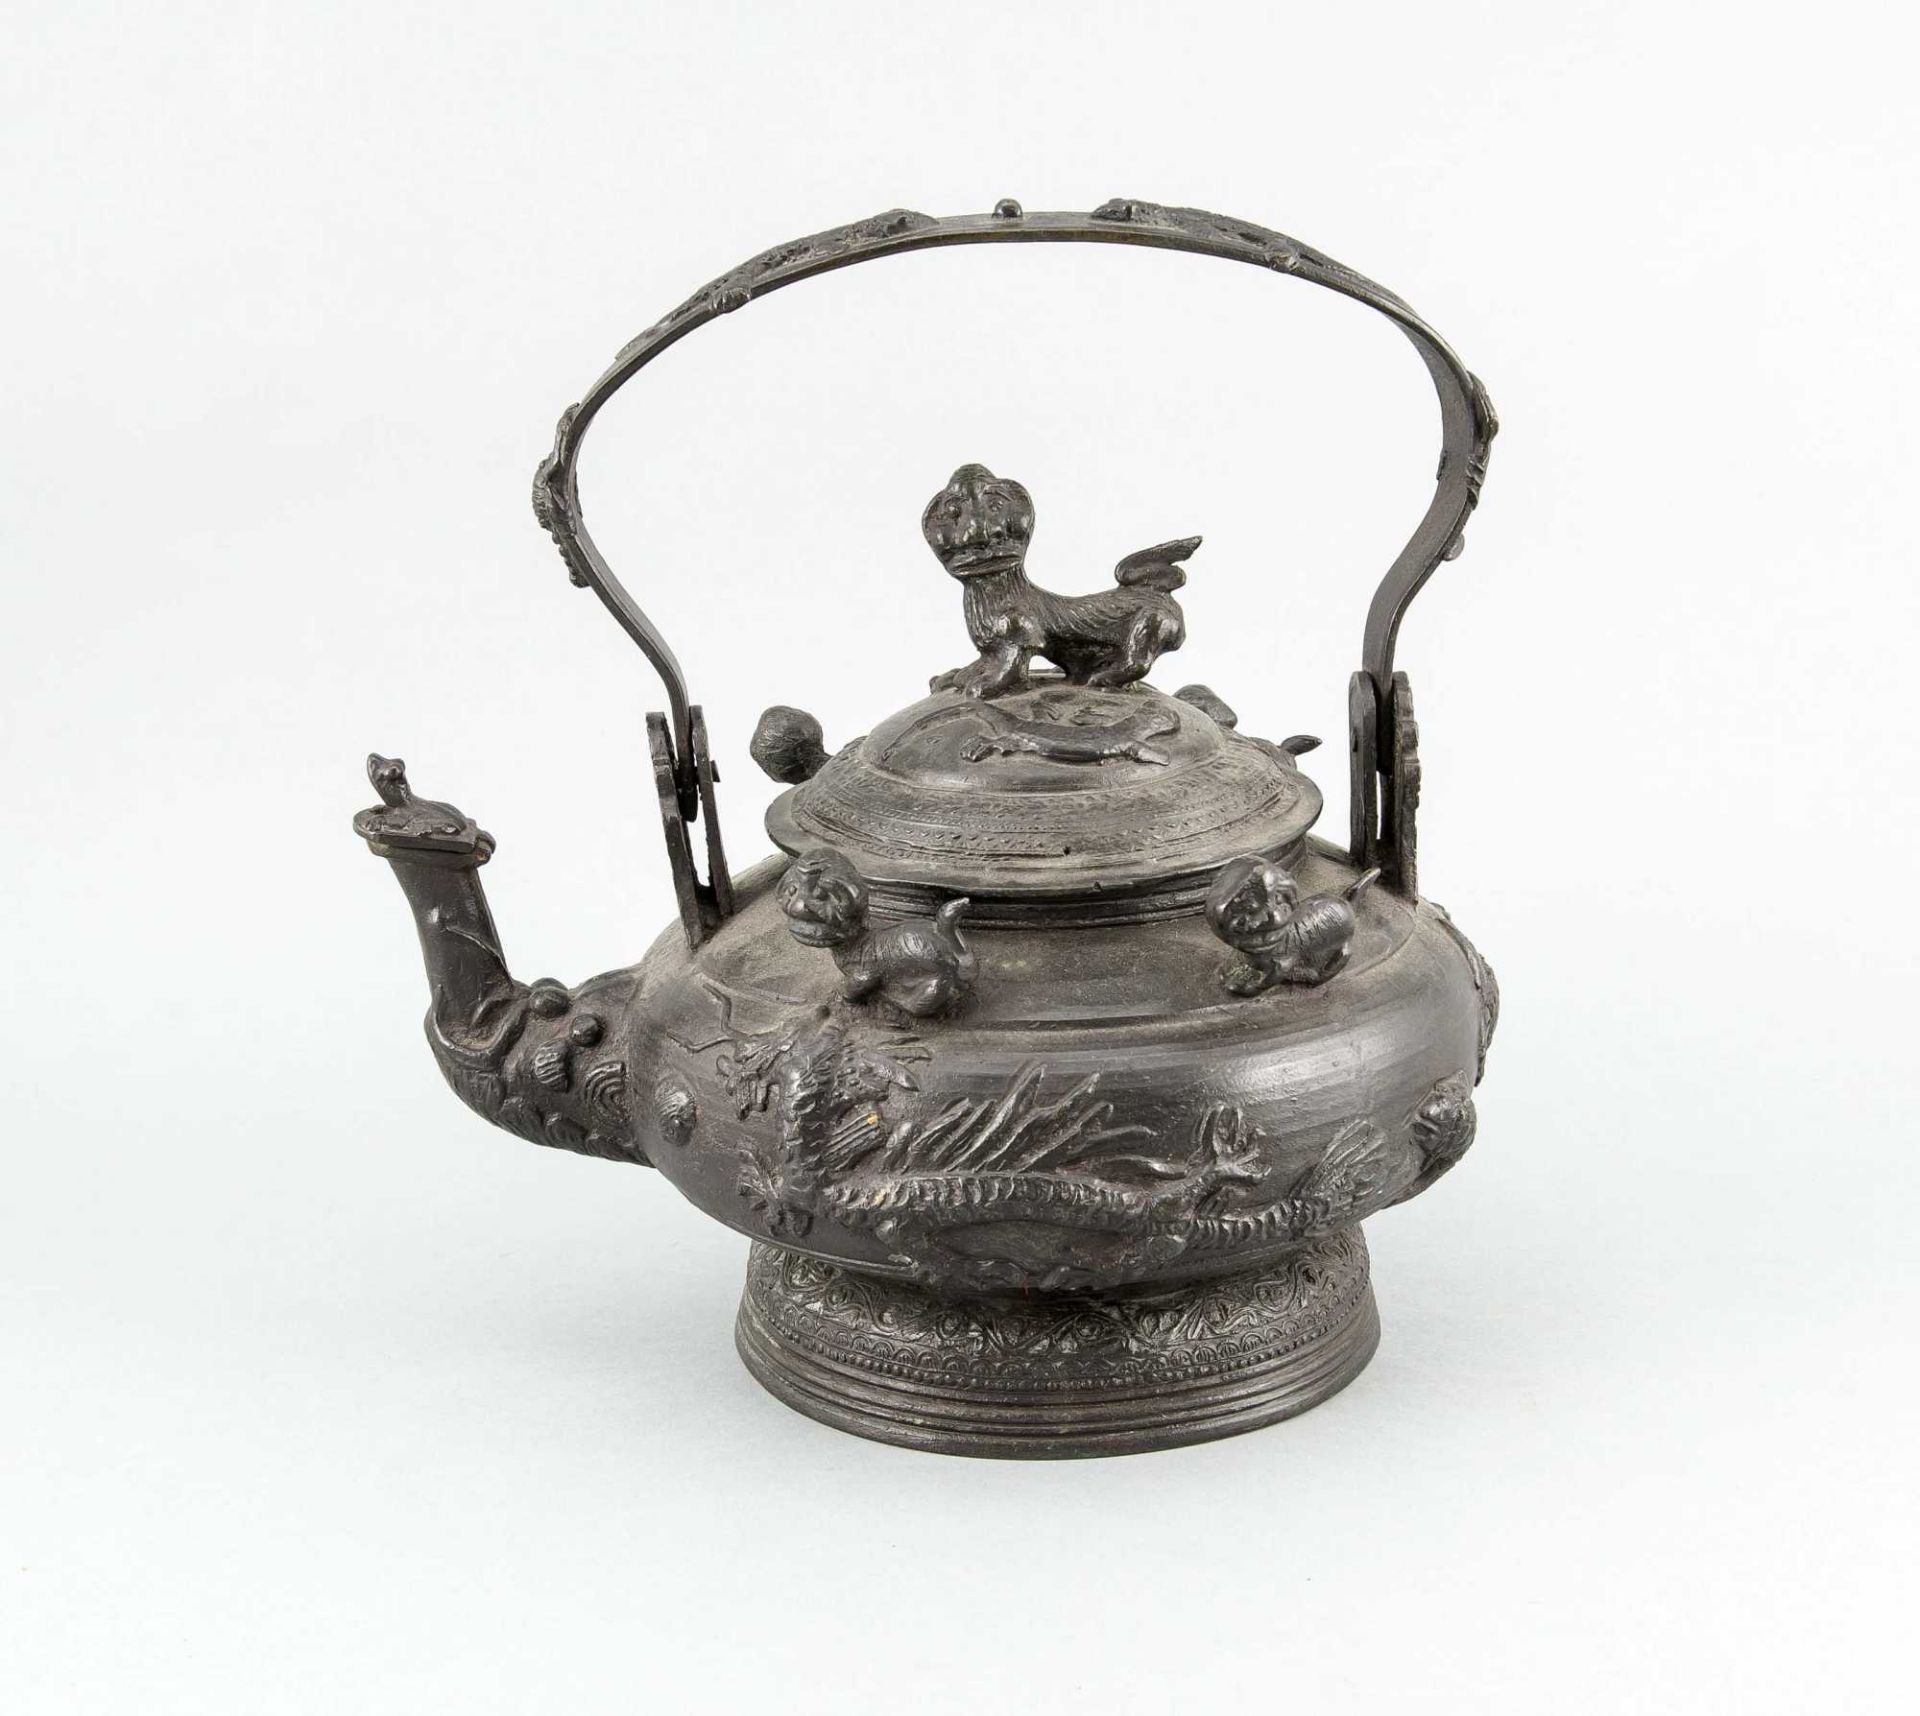 Große chinesische Teekanne um 1900, üppig reliefierte Bronze mit schwarzer Patina, vollplastische